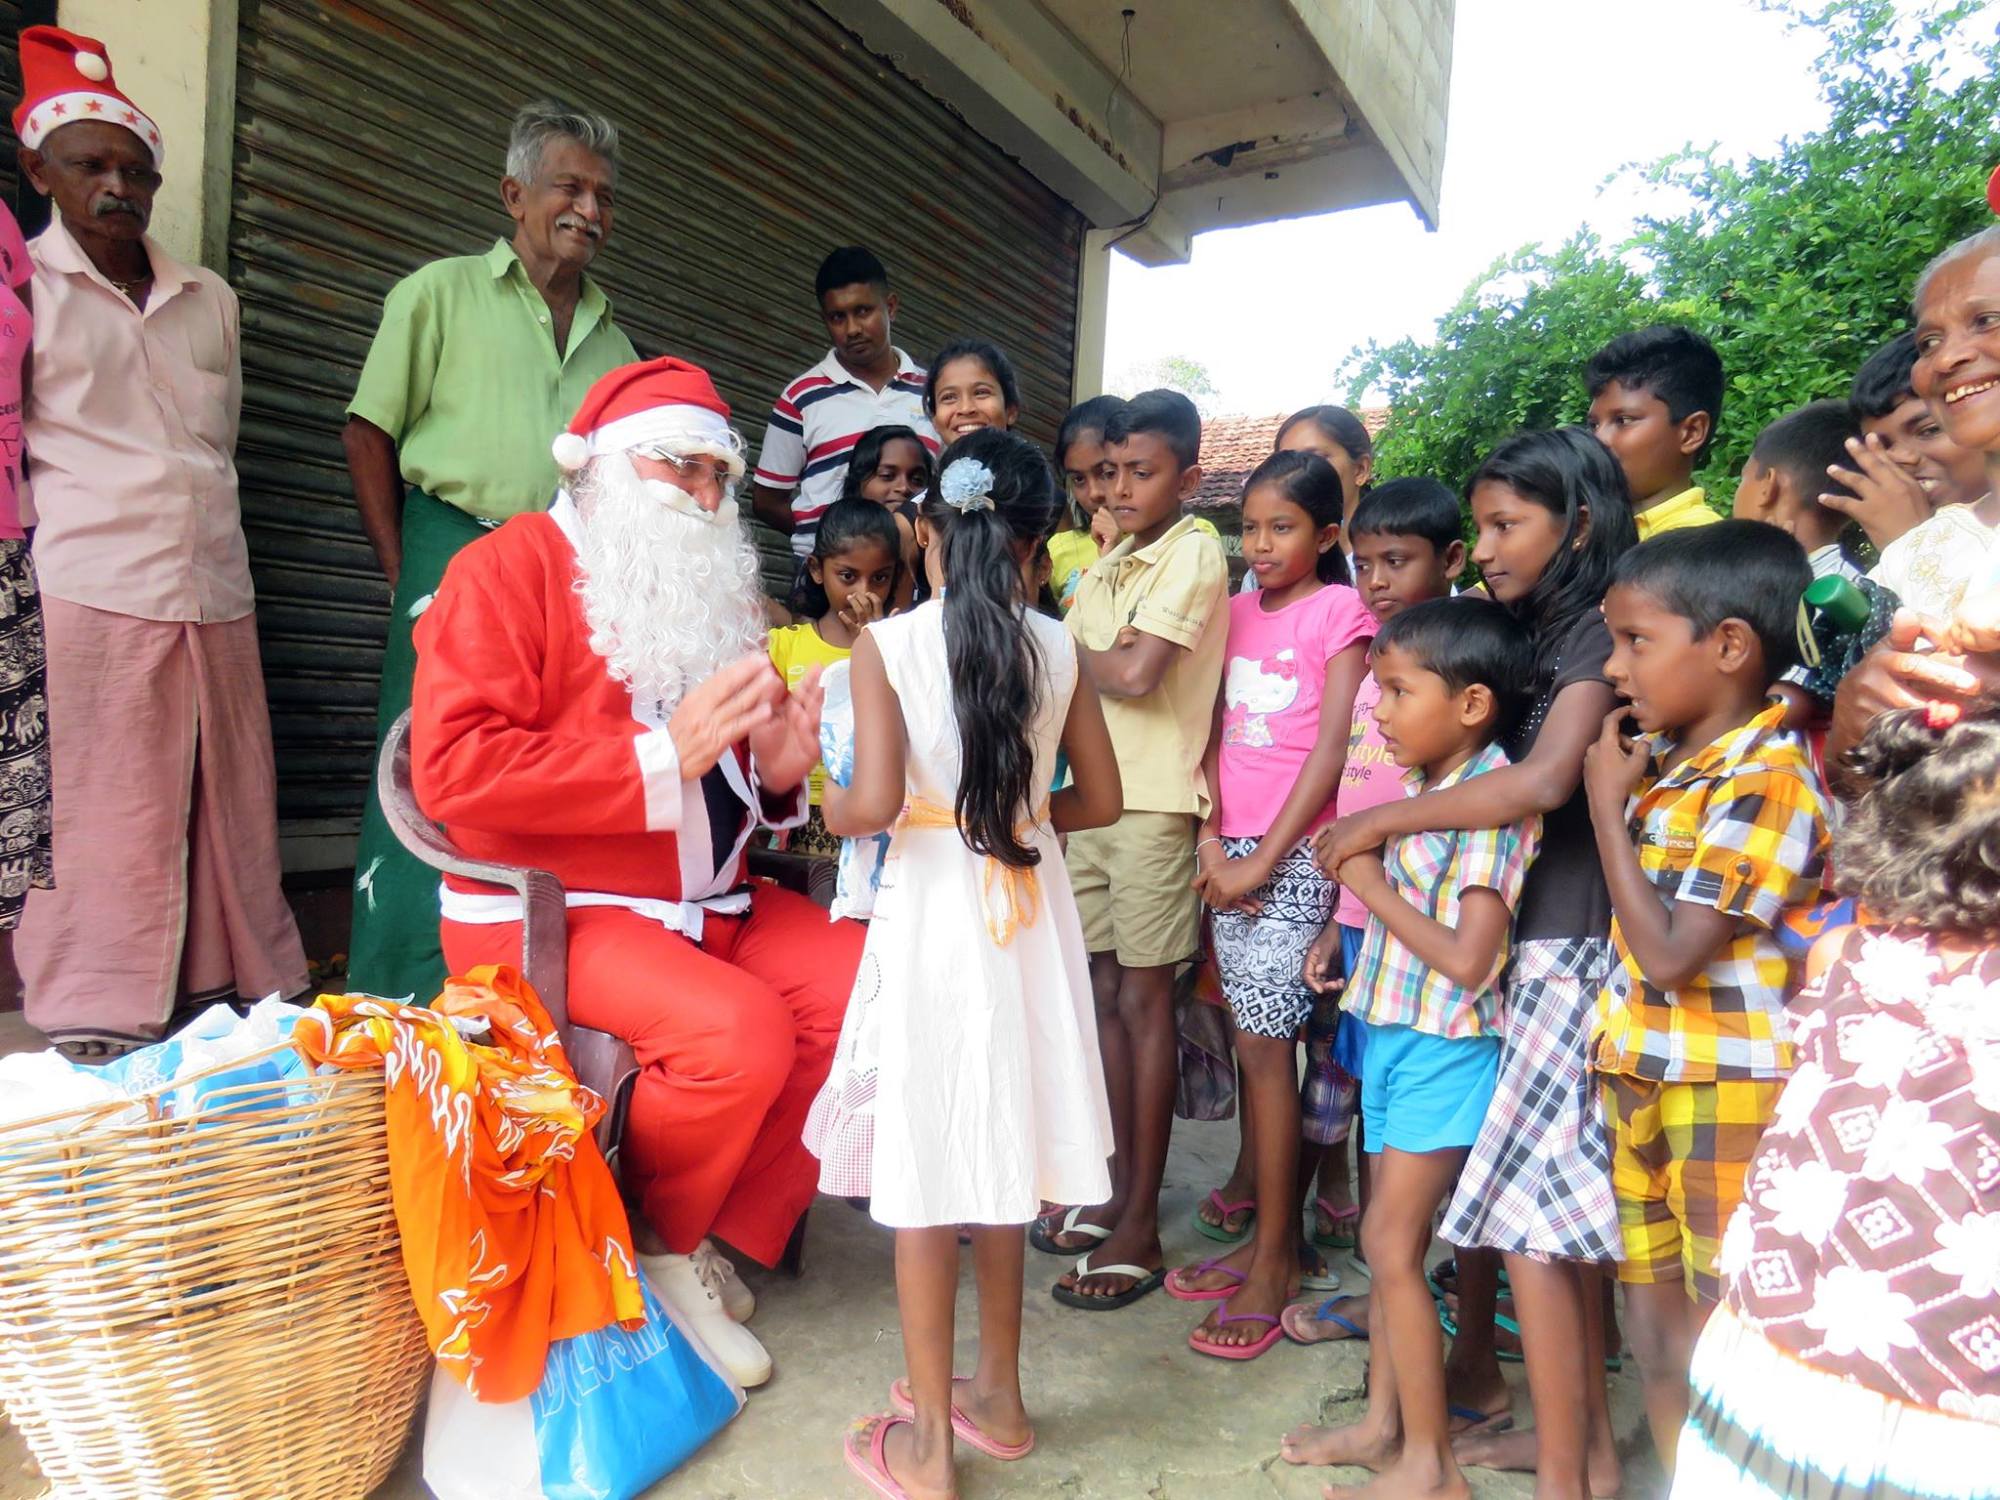 Magyar Mikulás visz ajándékot a gyerekeknek Srí Lankán